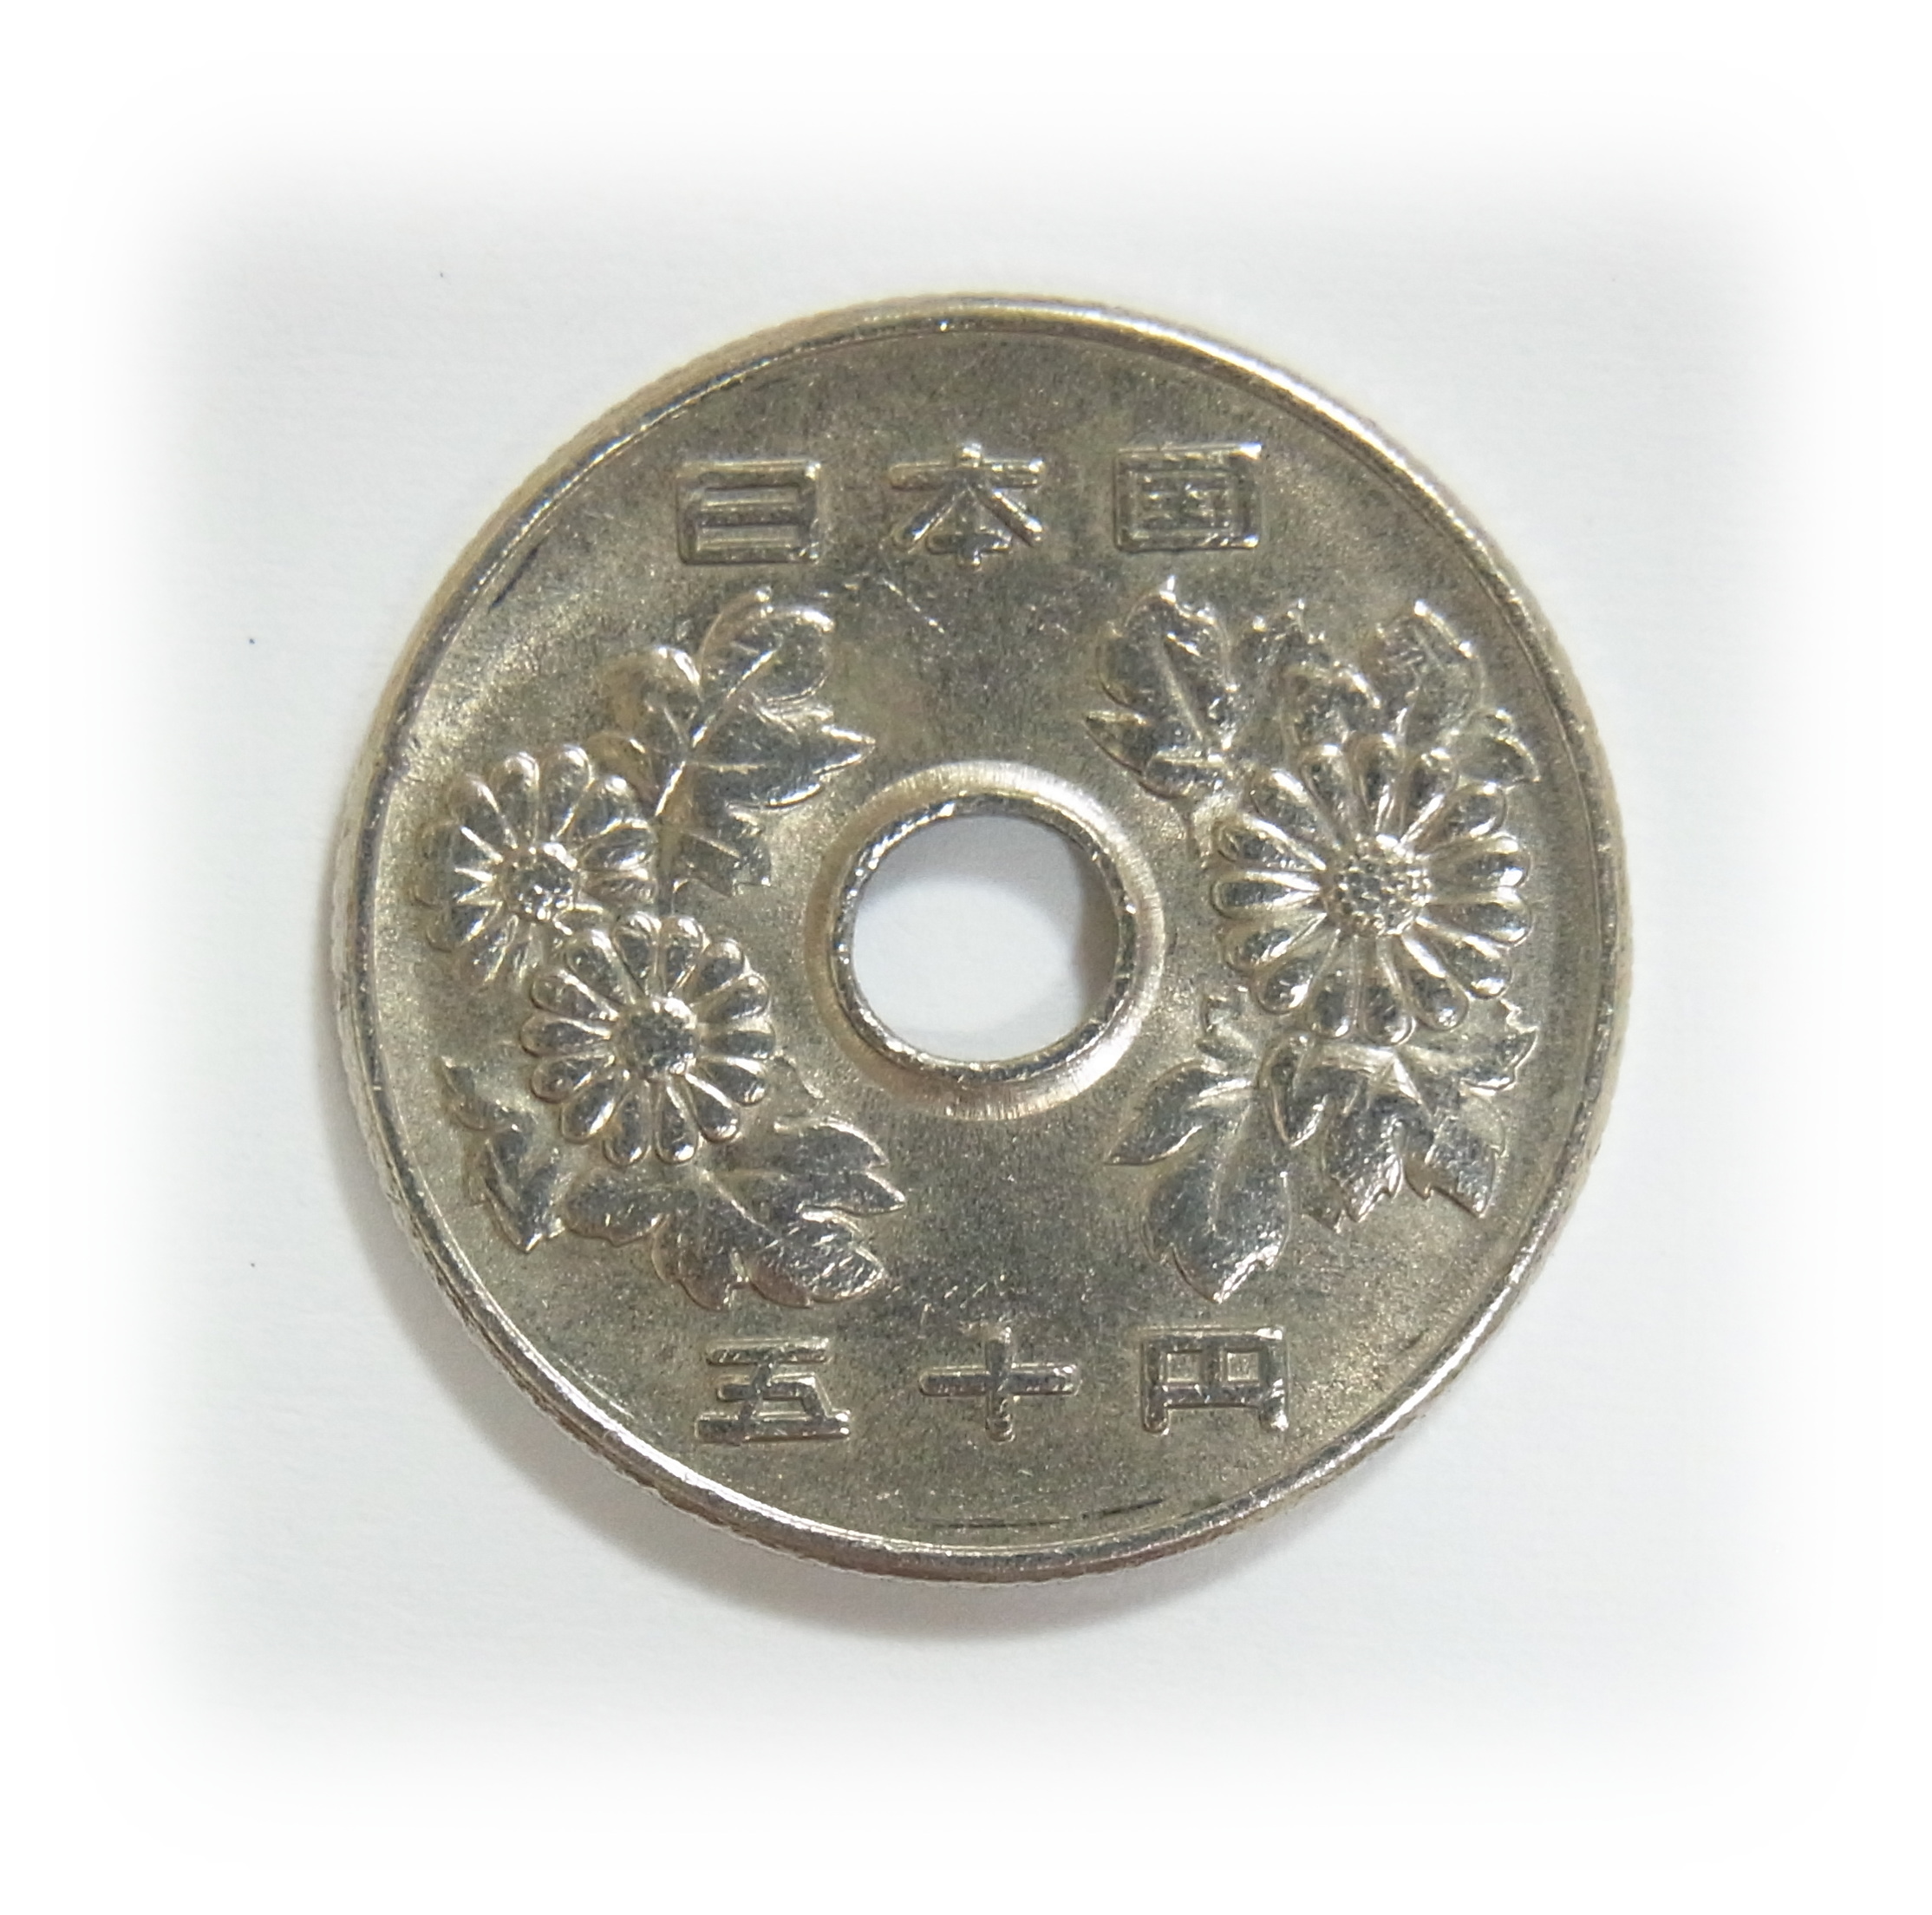 現行50円硬貨の小菊の意匠